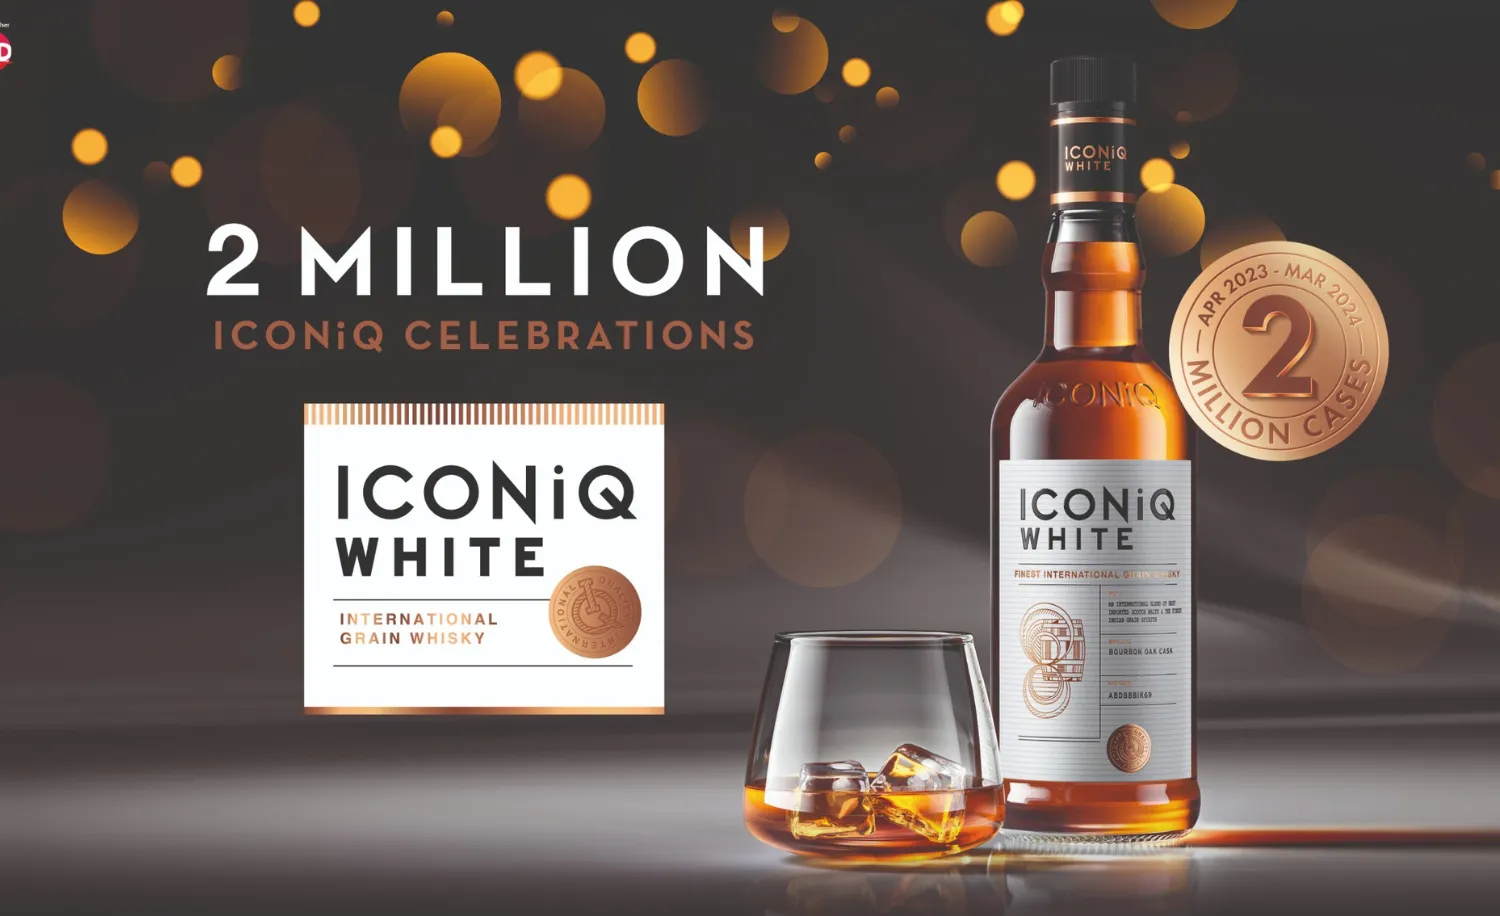 ICONiQ White Whisky reaches 2 million cases